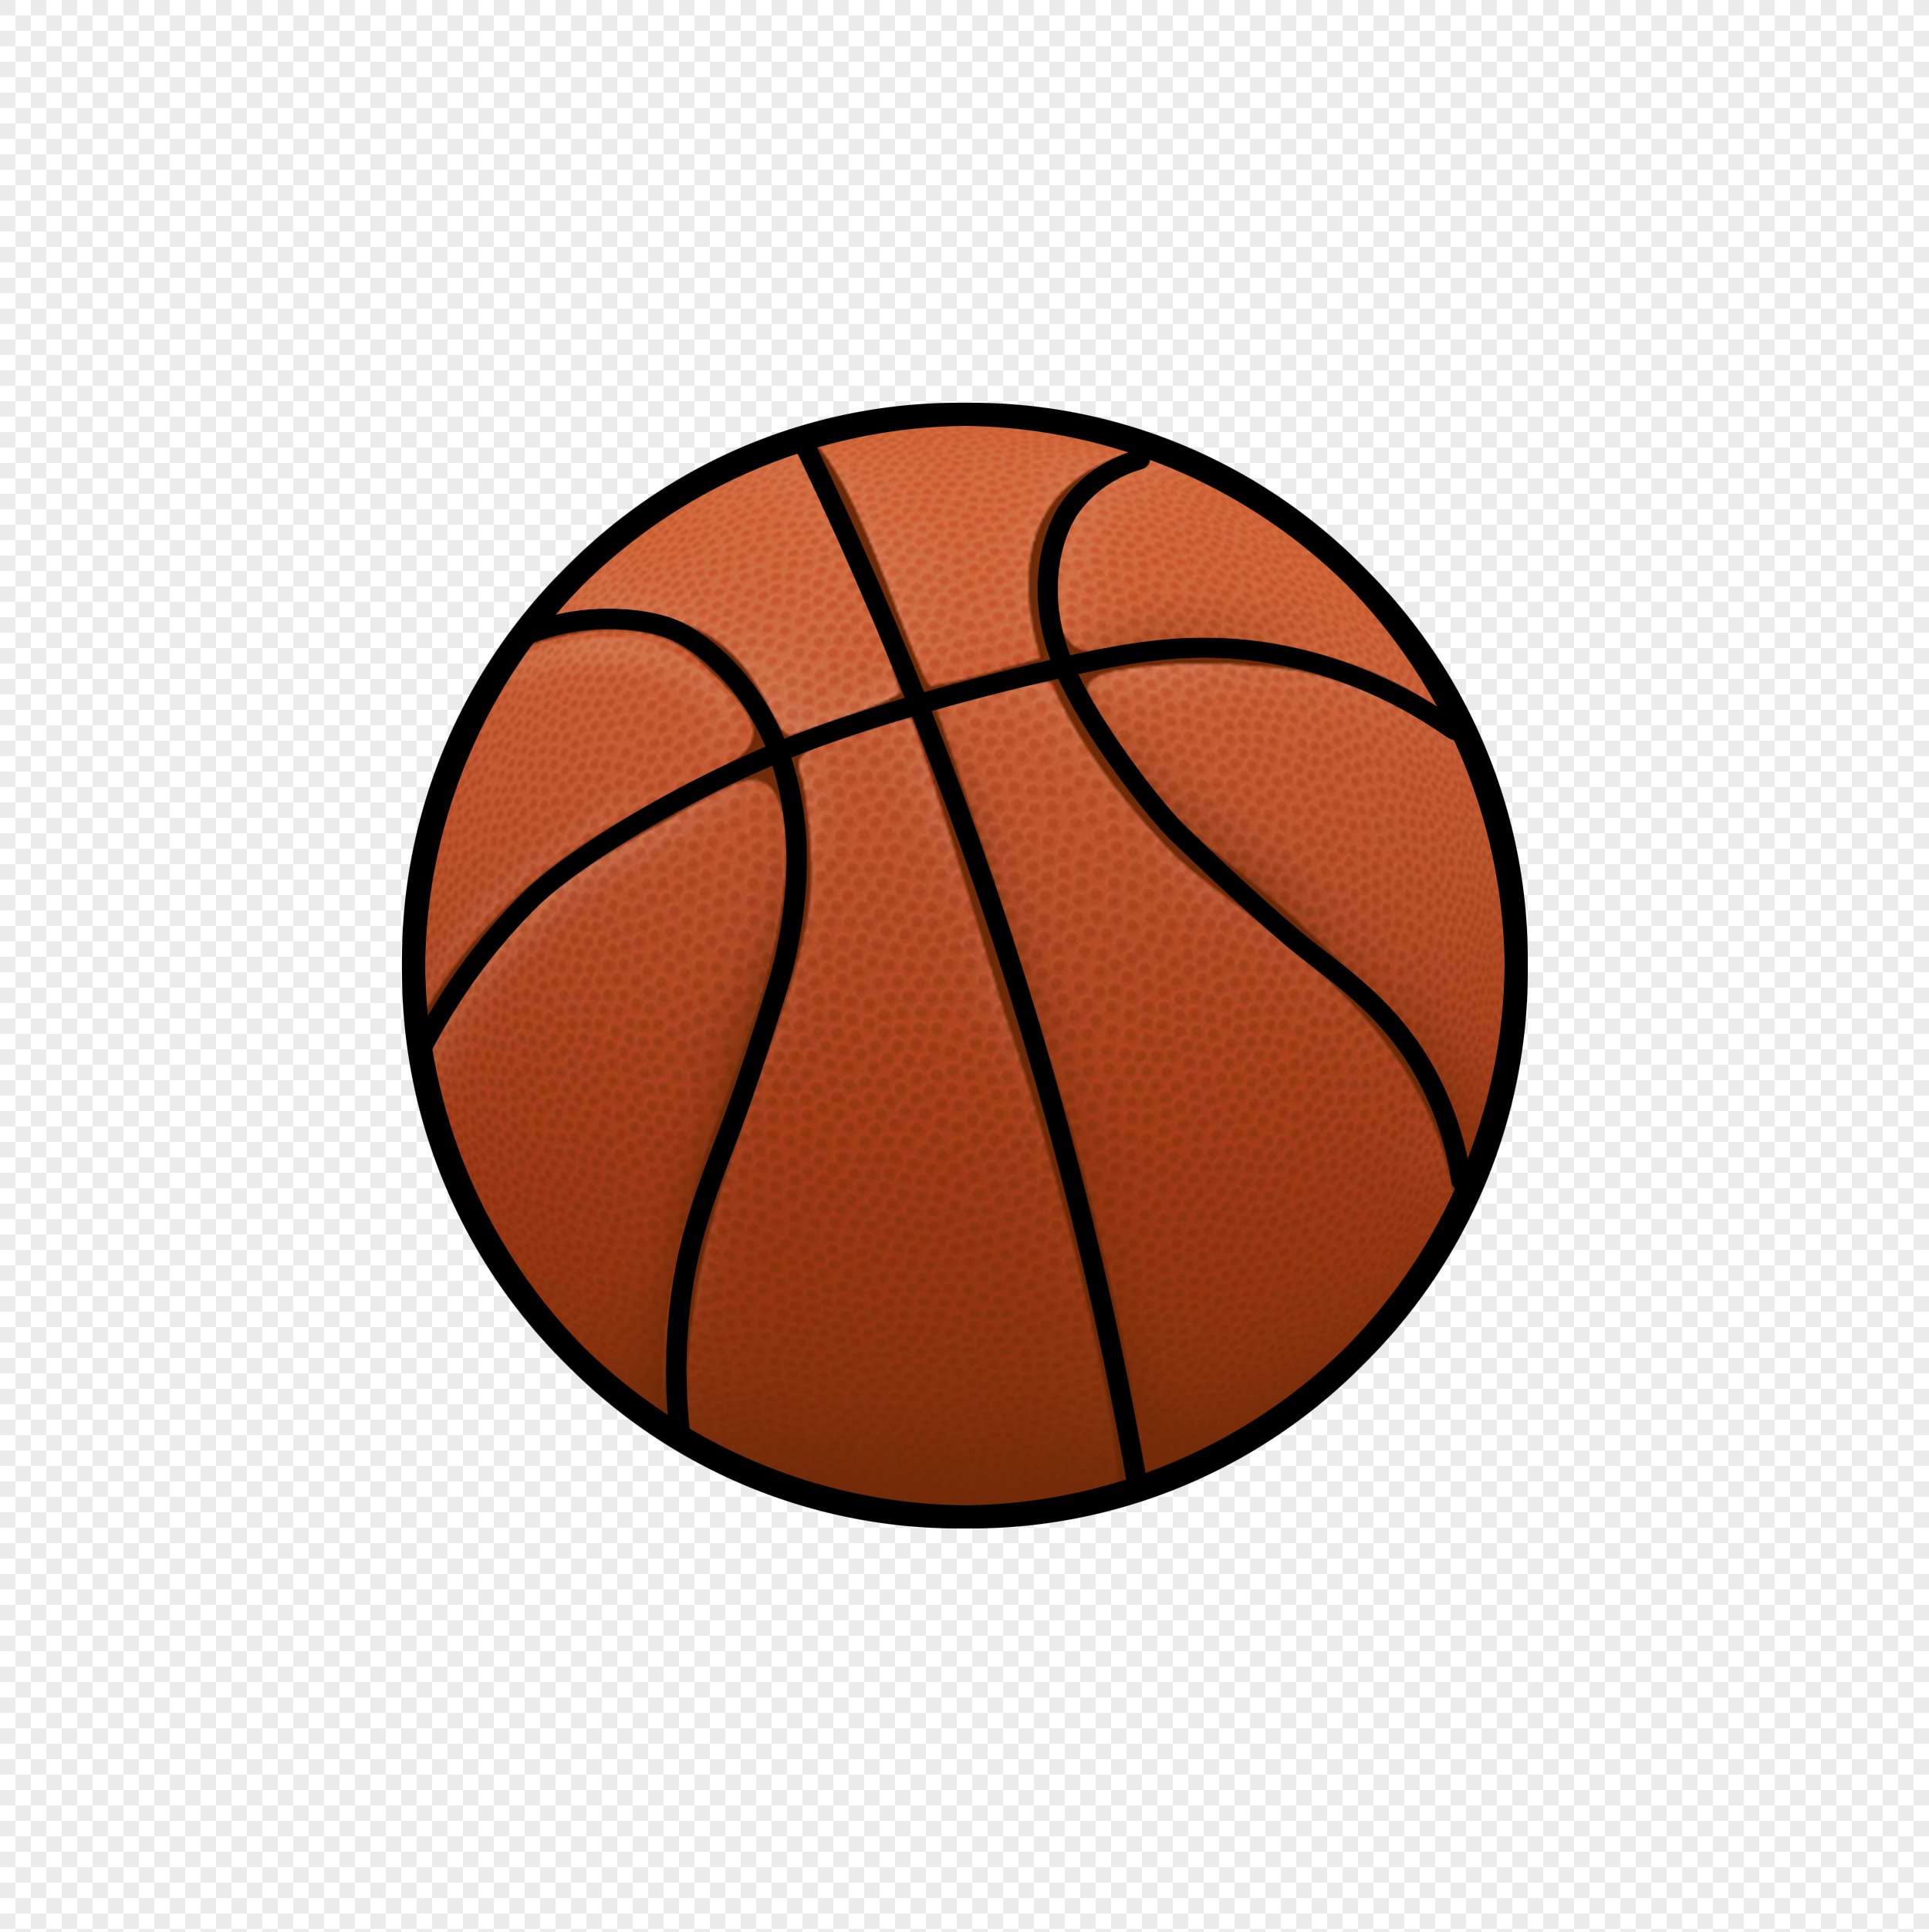 Рисунок баскетбольного мяча НБА